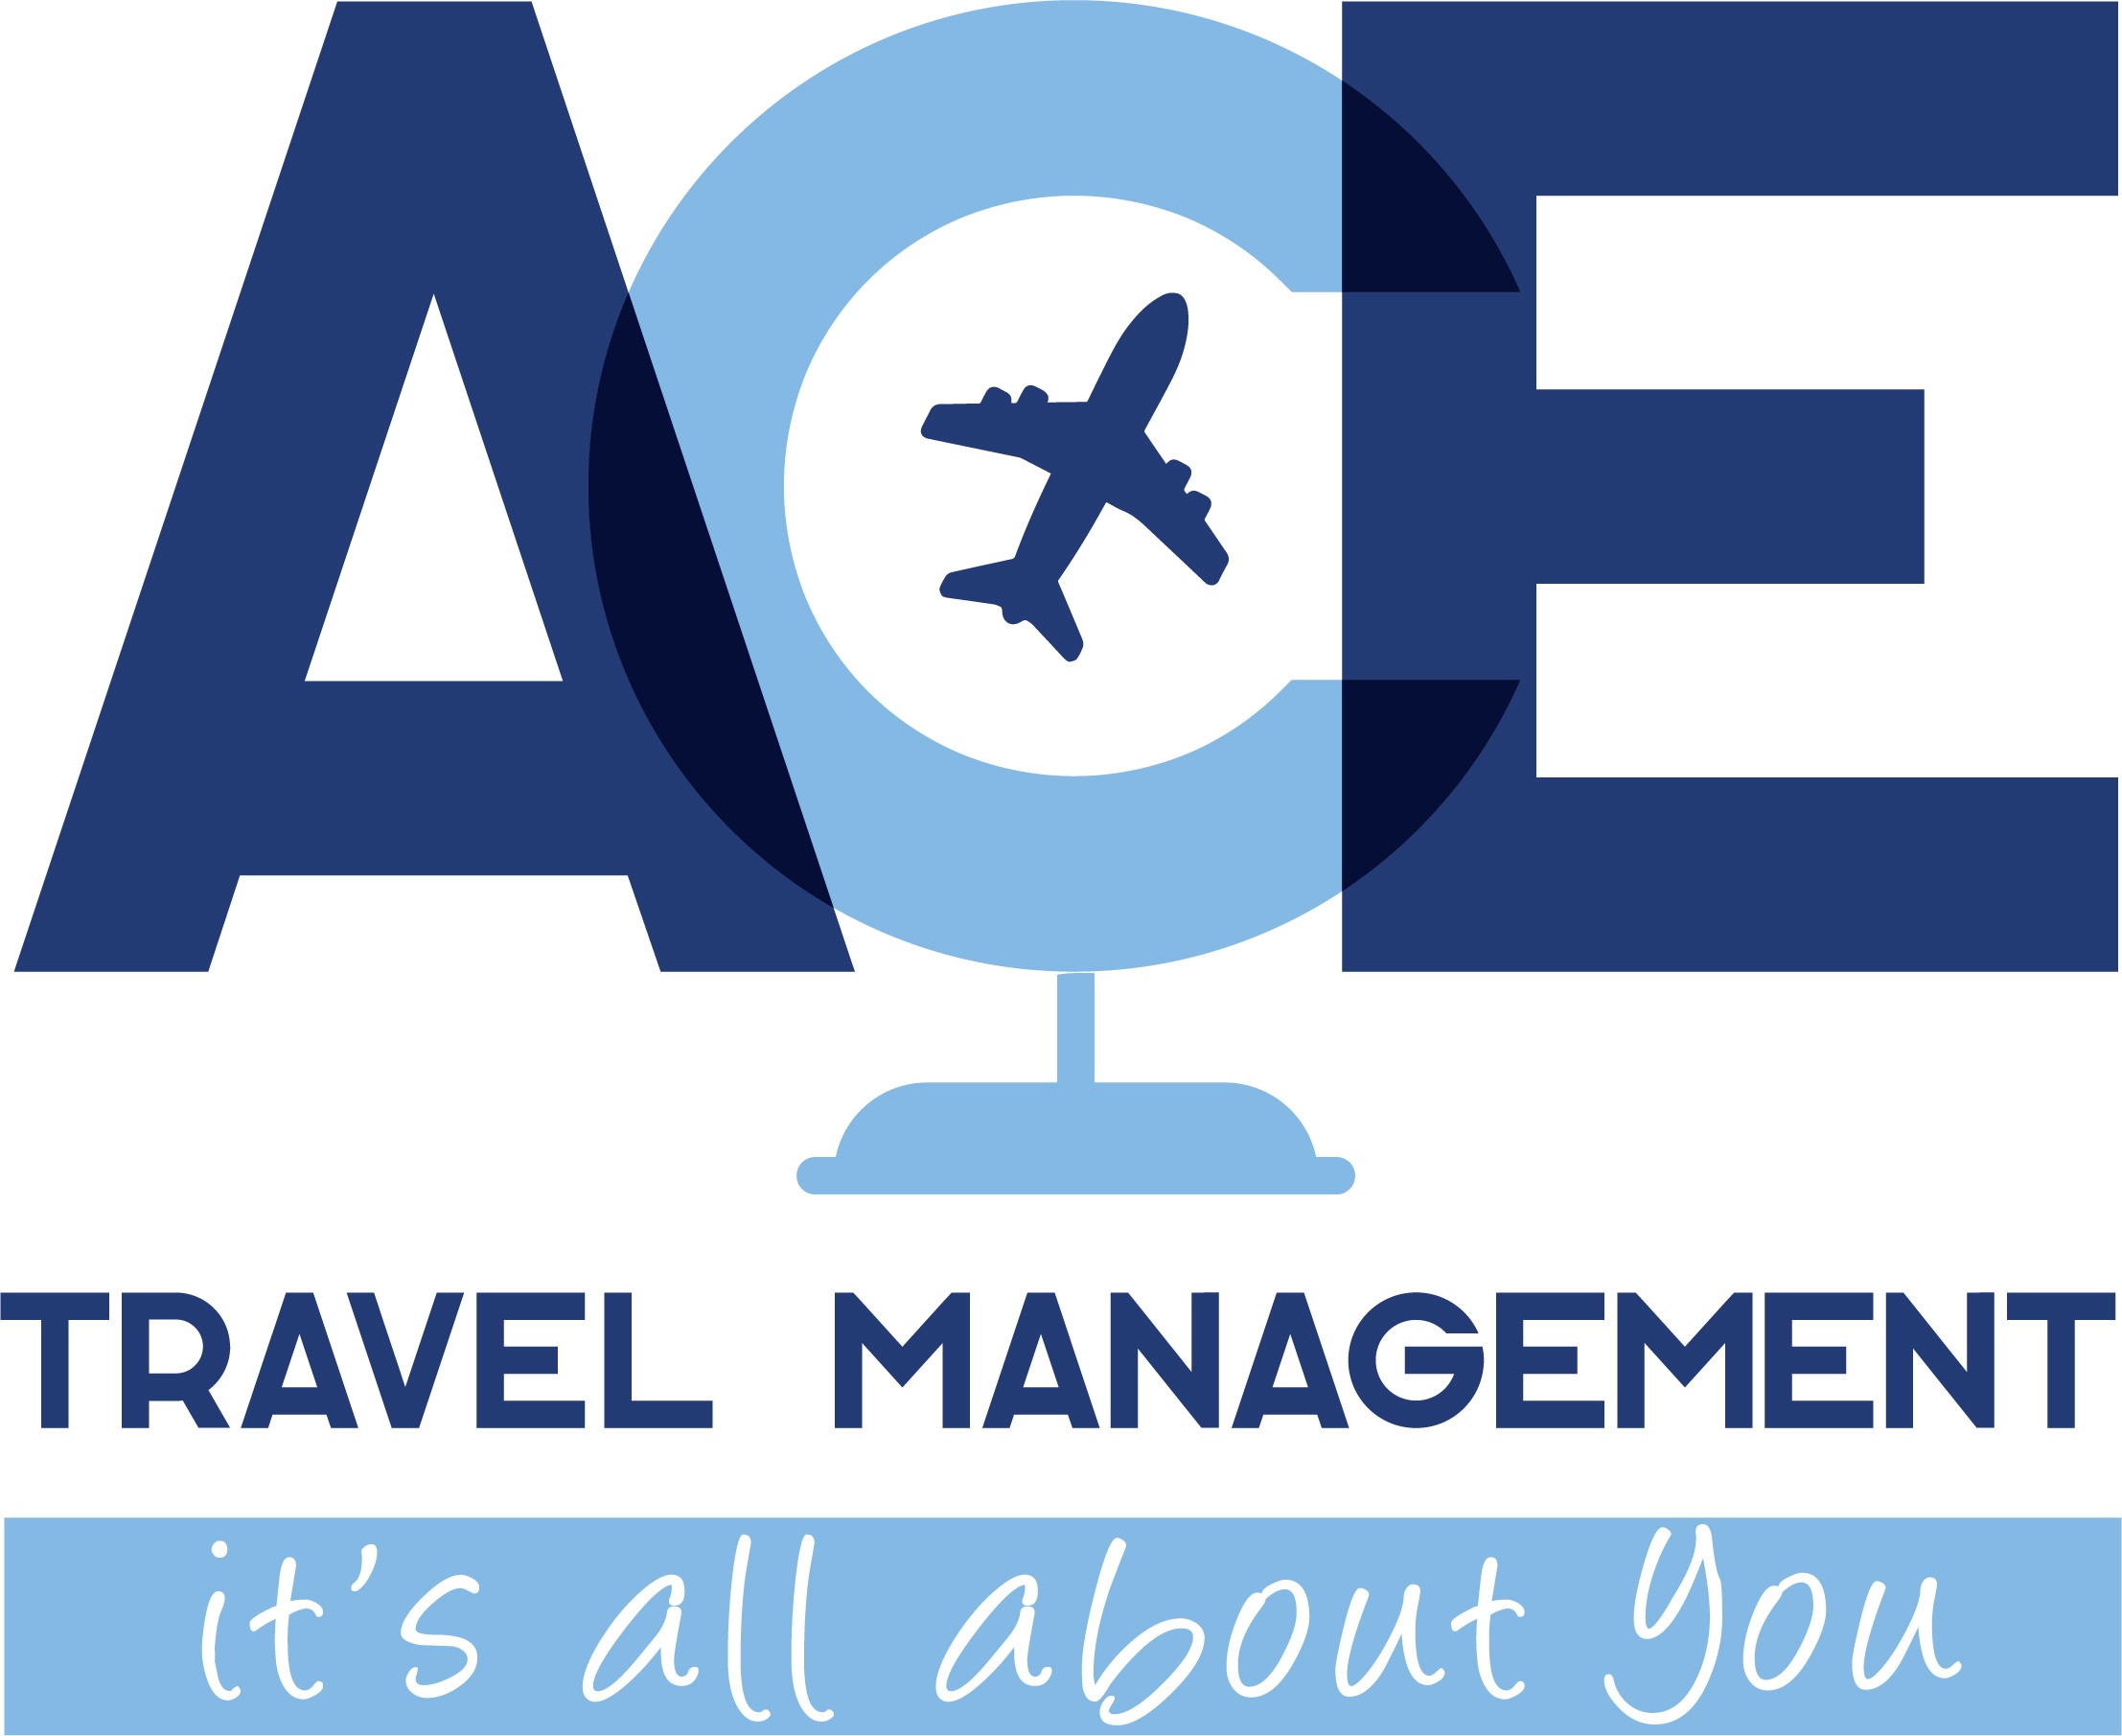 ace travel management